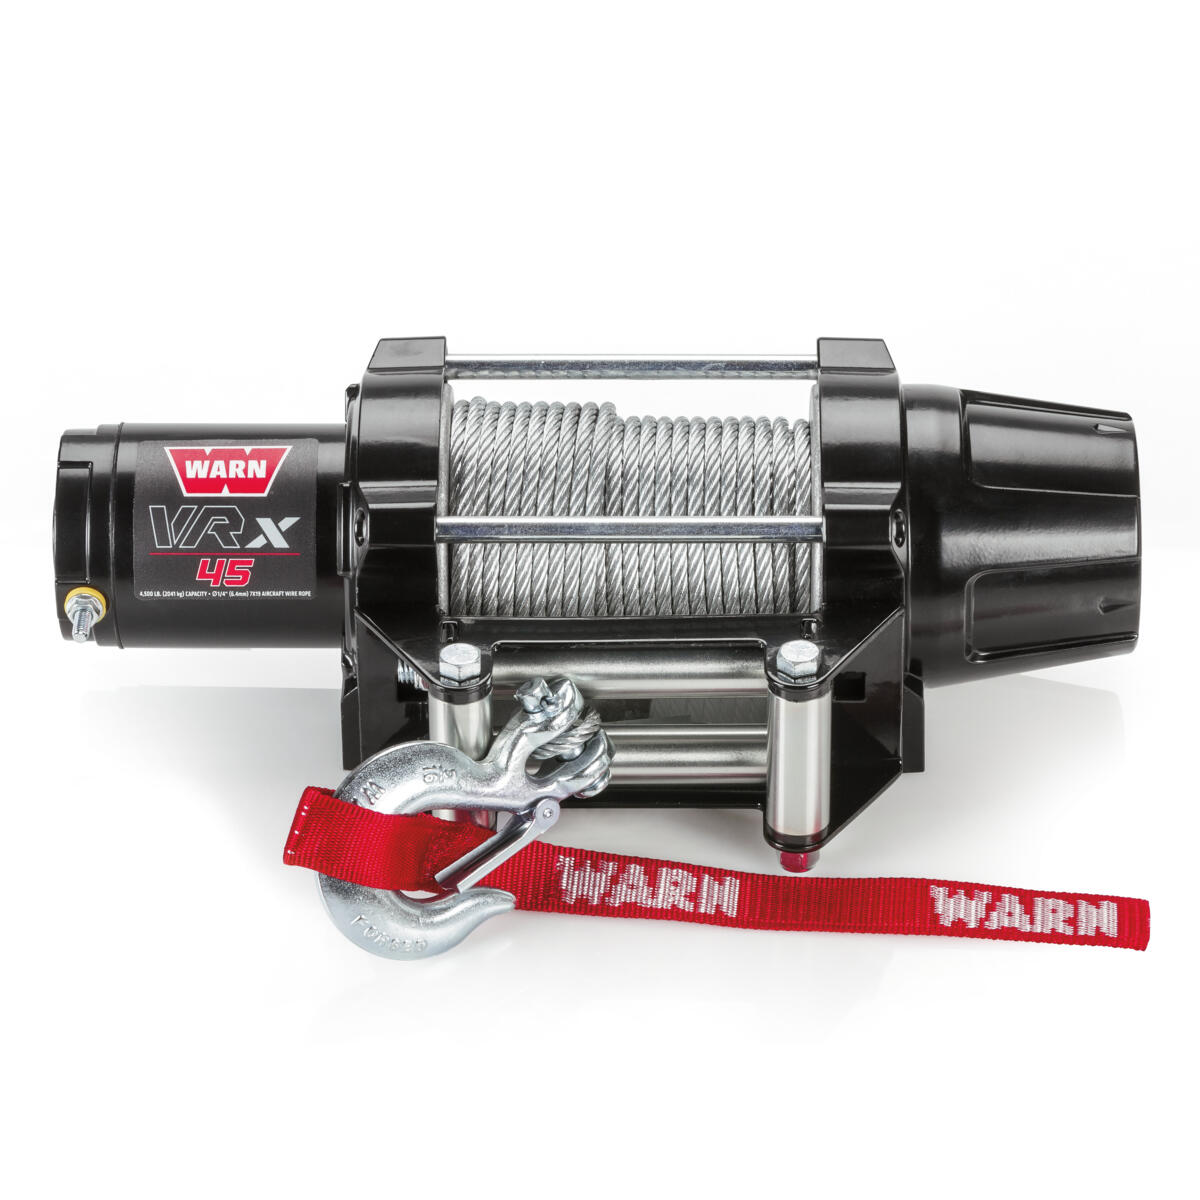 Vďaka celokovovej konštrukcii obsahuje navijak WARN® VRX s 15,2 metrami oceľového lana novú spojku vyvinutú z konštrukcie uzávierky náboja pohonu WARN® 4WD.